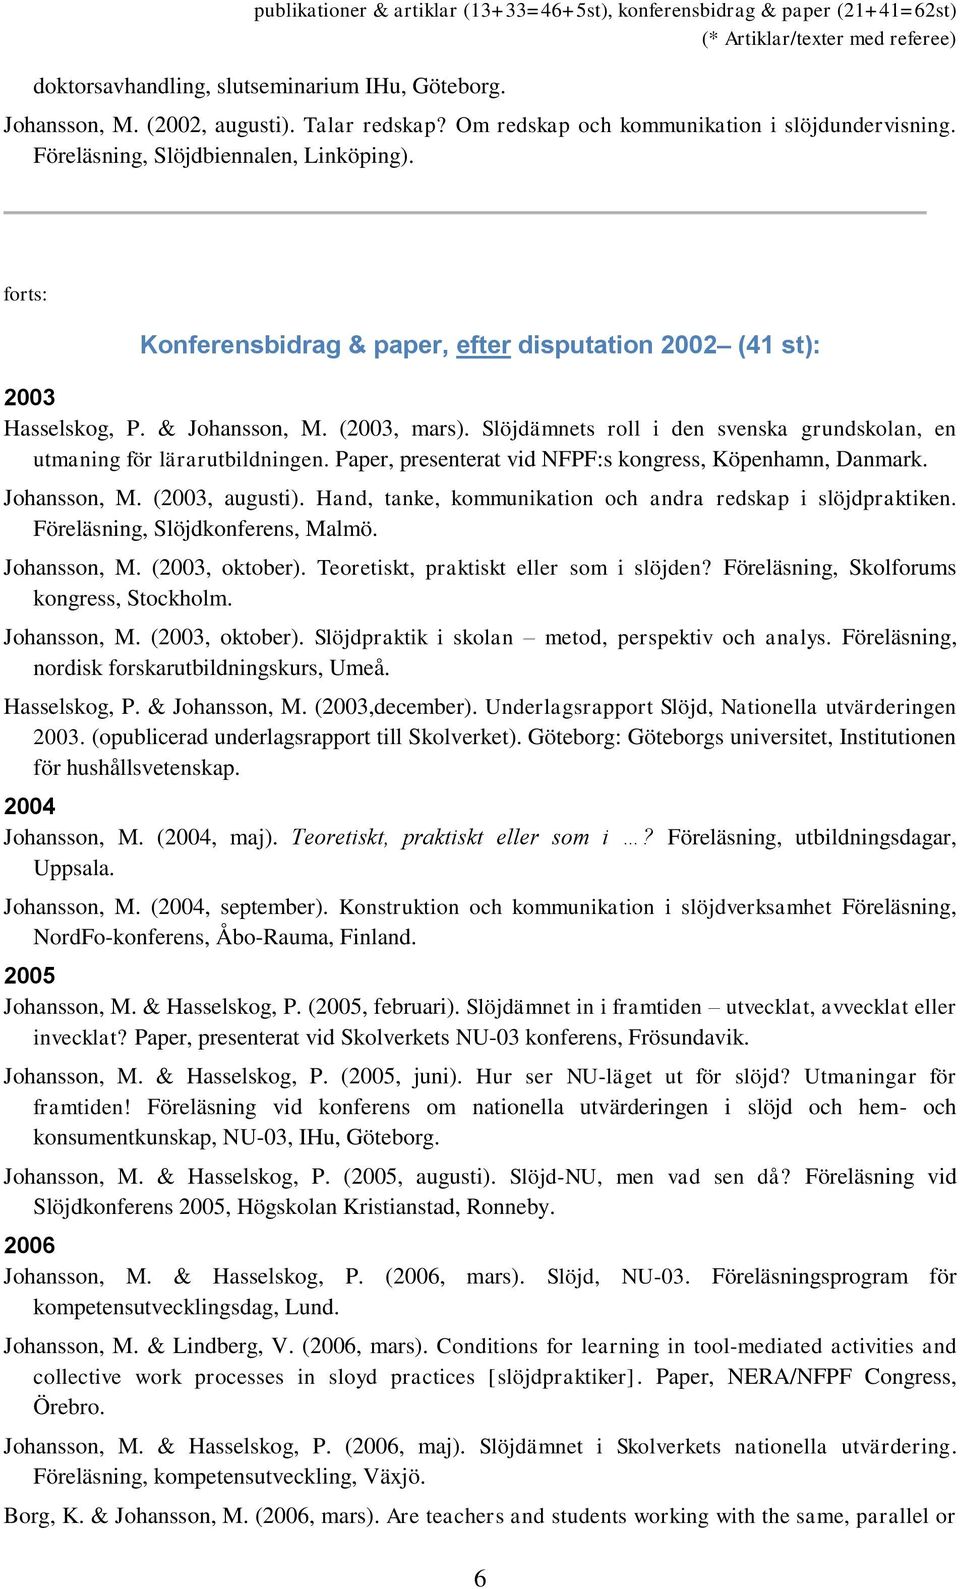 Paper, presenterat vid NFPF:s kongress, Köpenhamn, Danmark. Johansson, M. (2003, augusti). Hand, tanke, kommunikation och andra redskap i slöjdpraktiken. Föreläsning, Slöjdkonferens, Malmö.